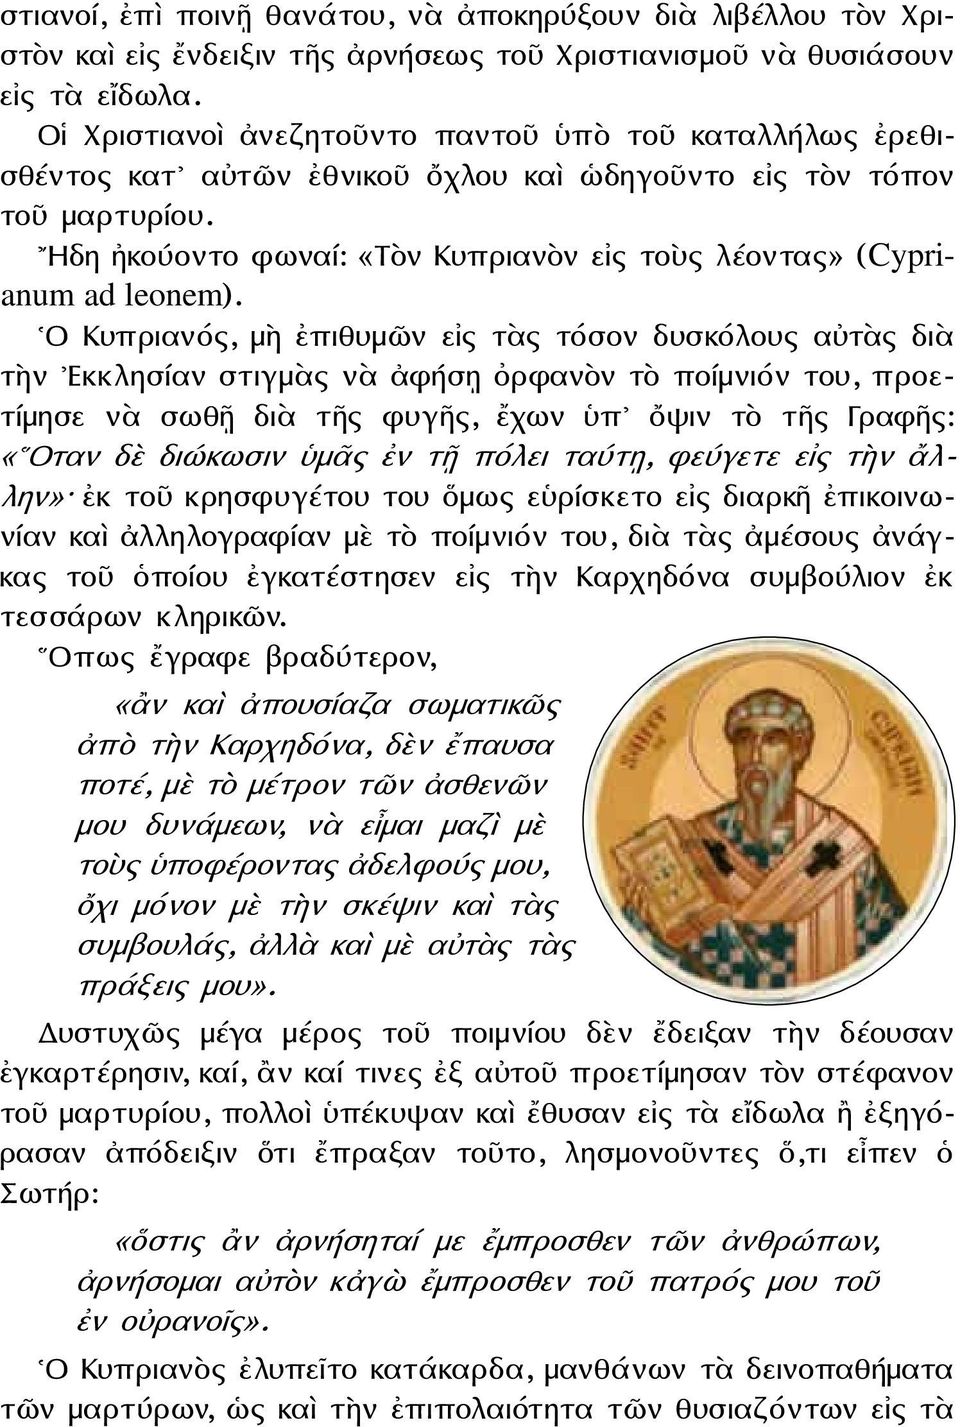 Ηδη ἠκούοντο φωναί: «Τὸν Κυπριανὸν εἰς τοὺς λέοντας» (Cyprianum ad leonem).